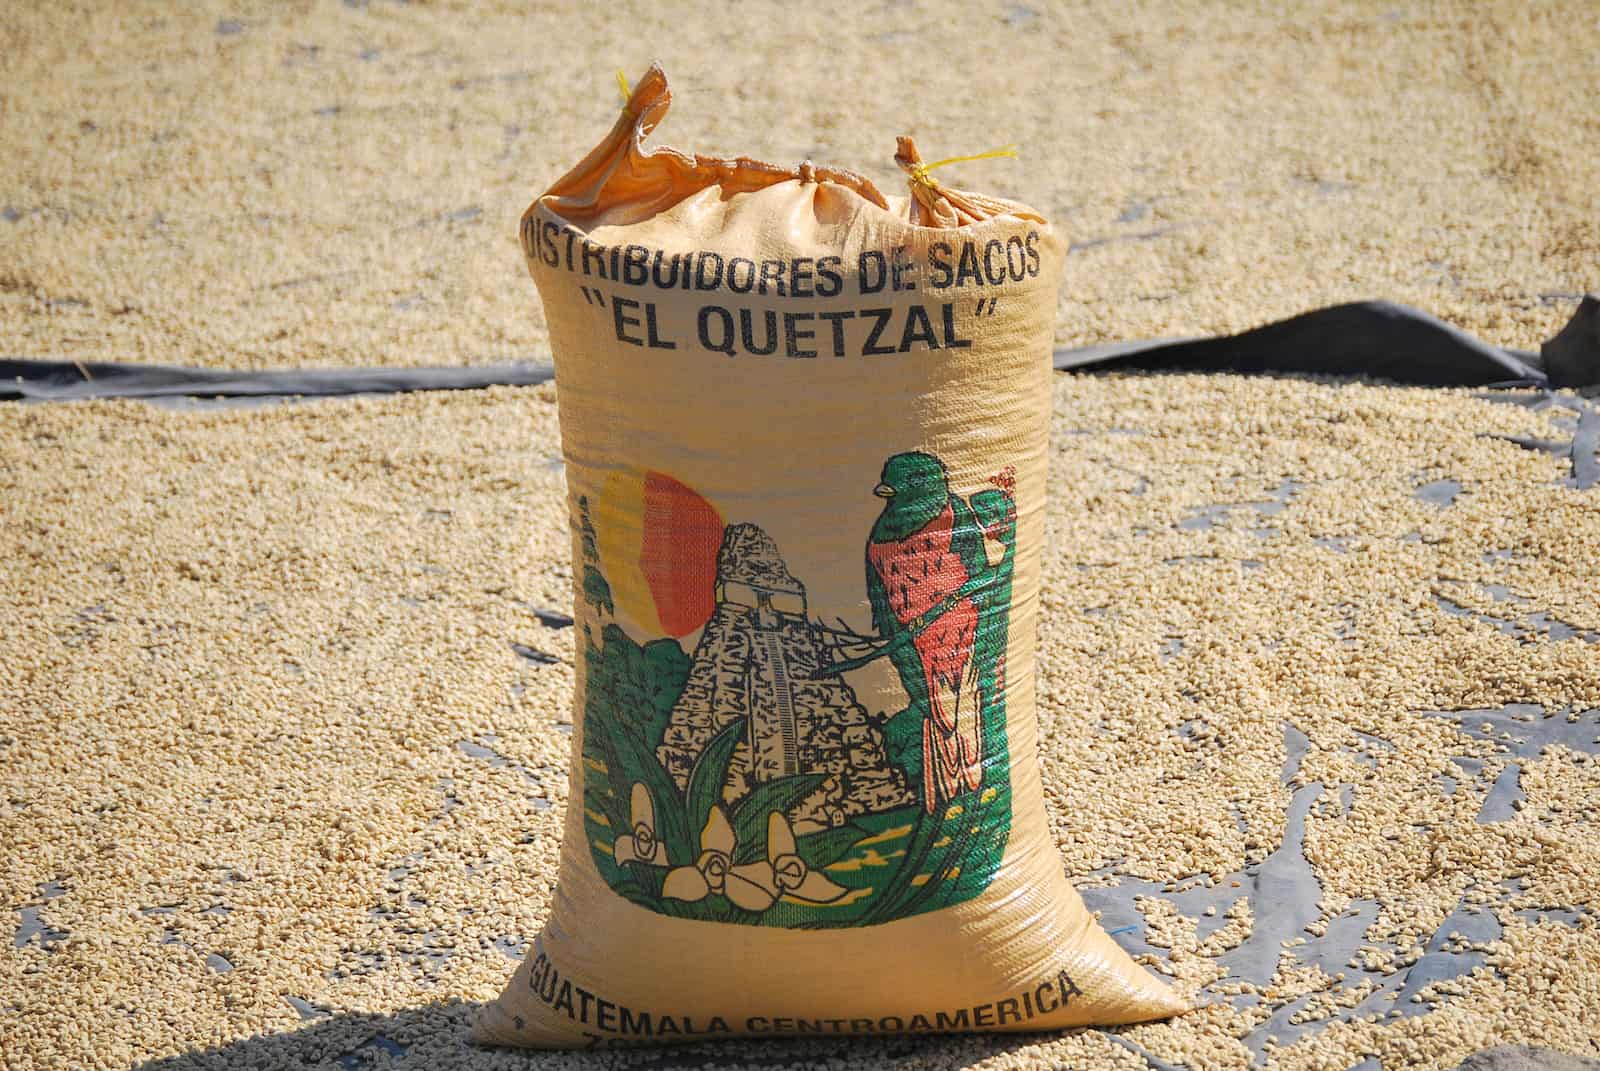 guatemala coffee bag